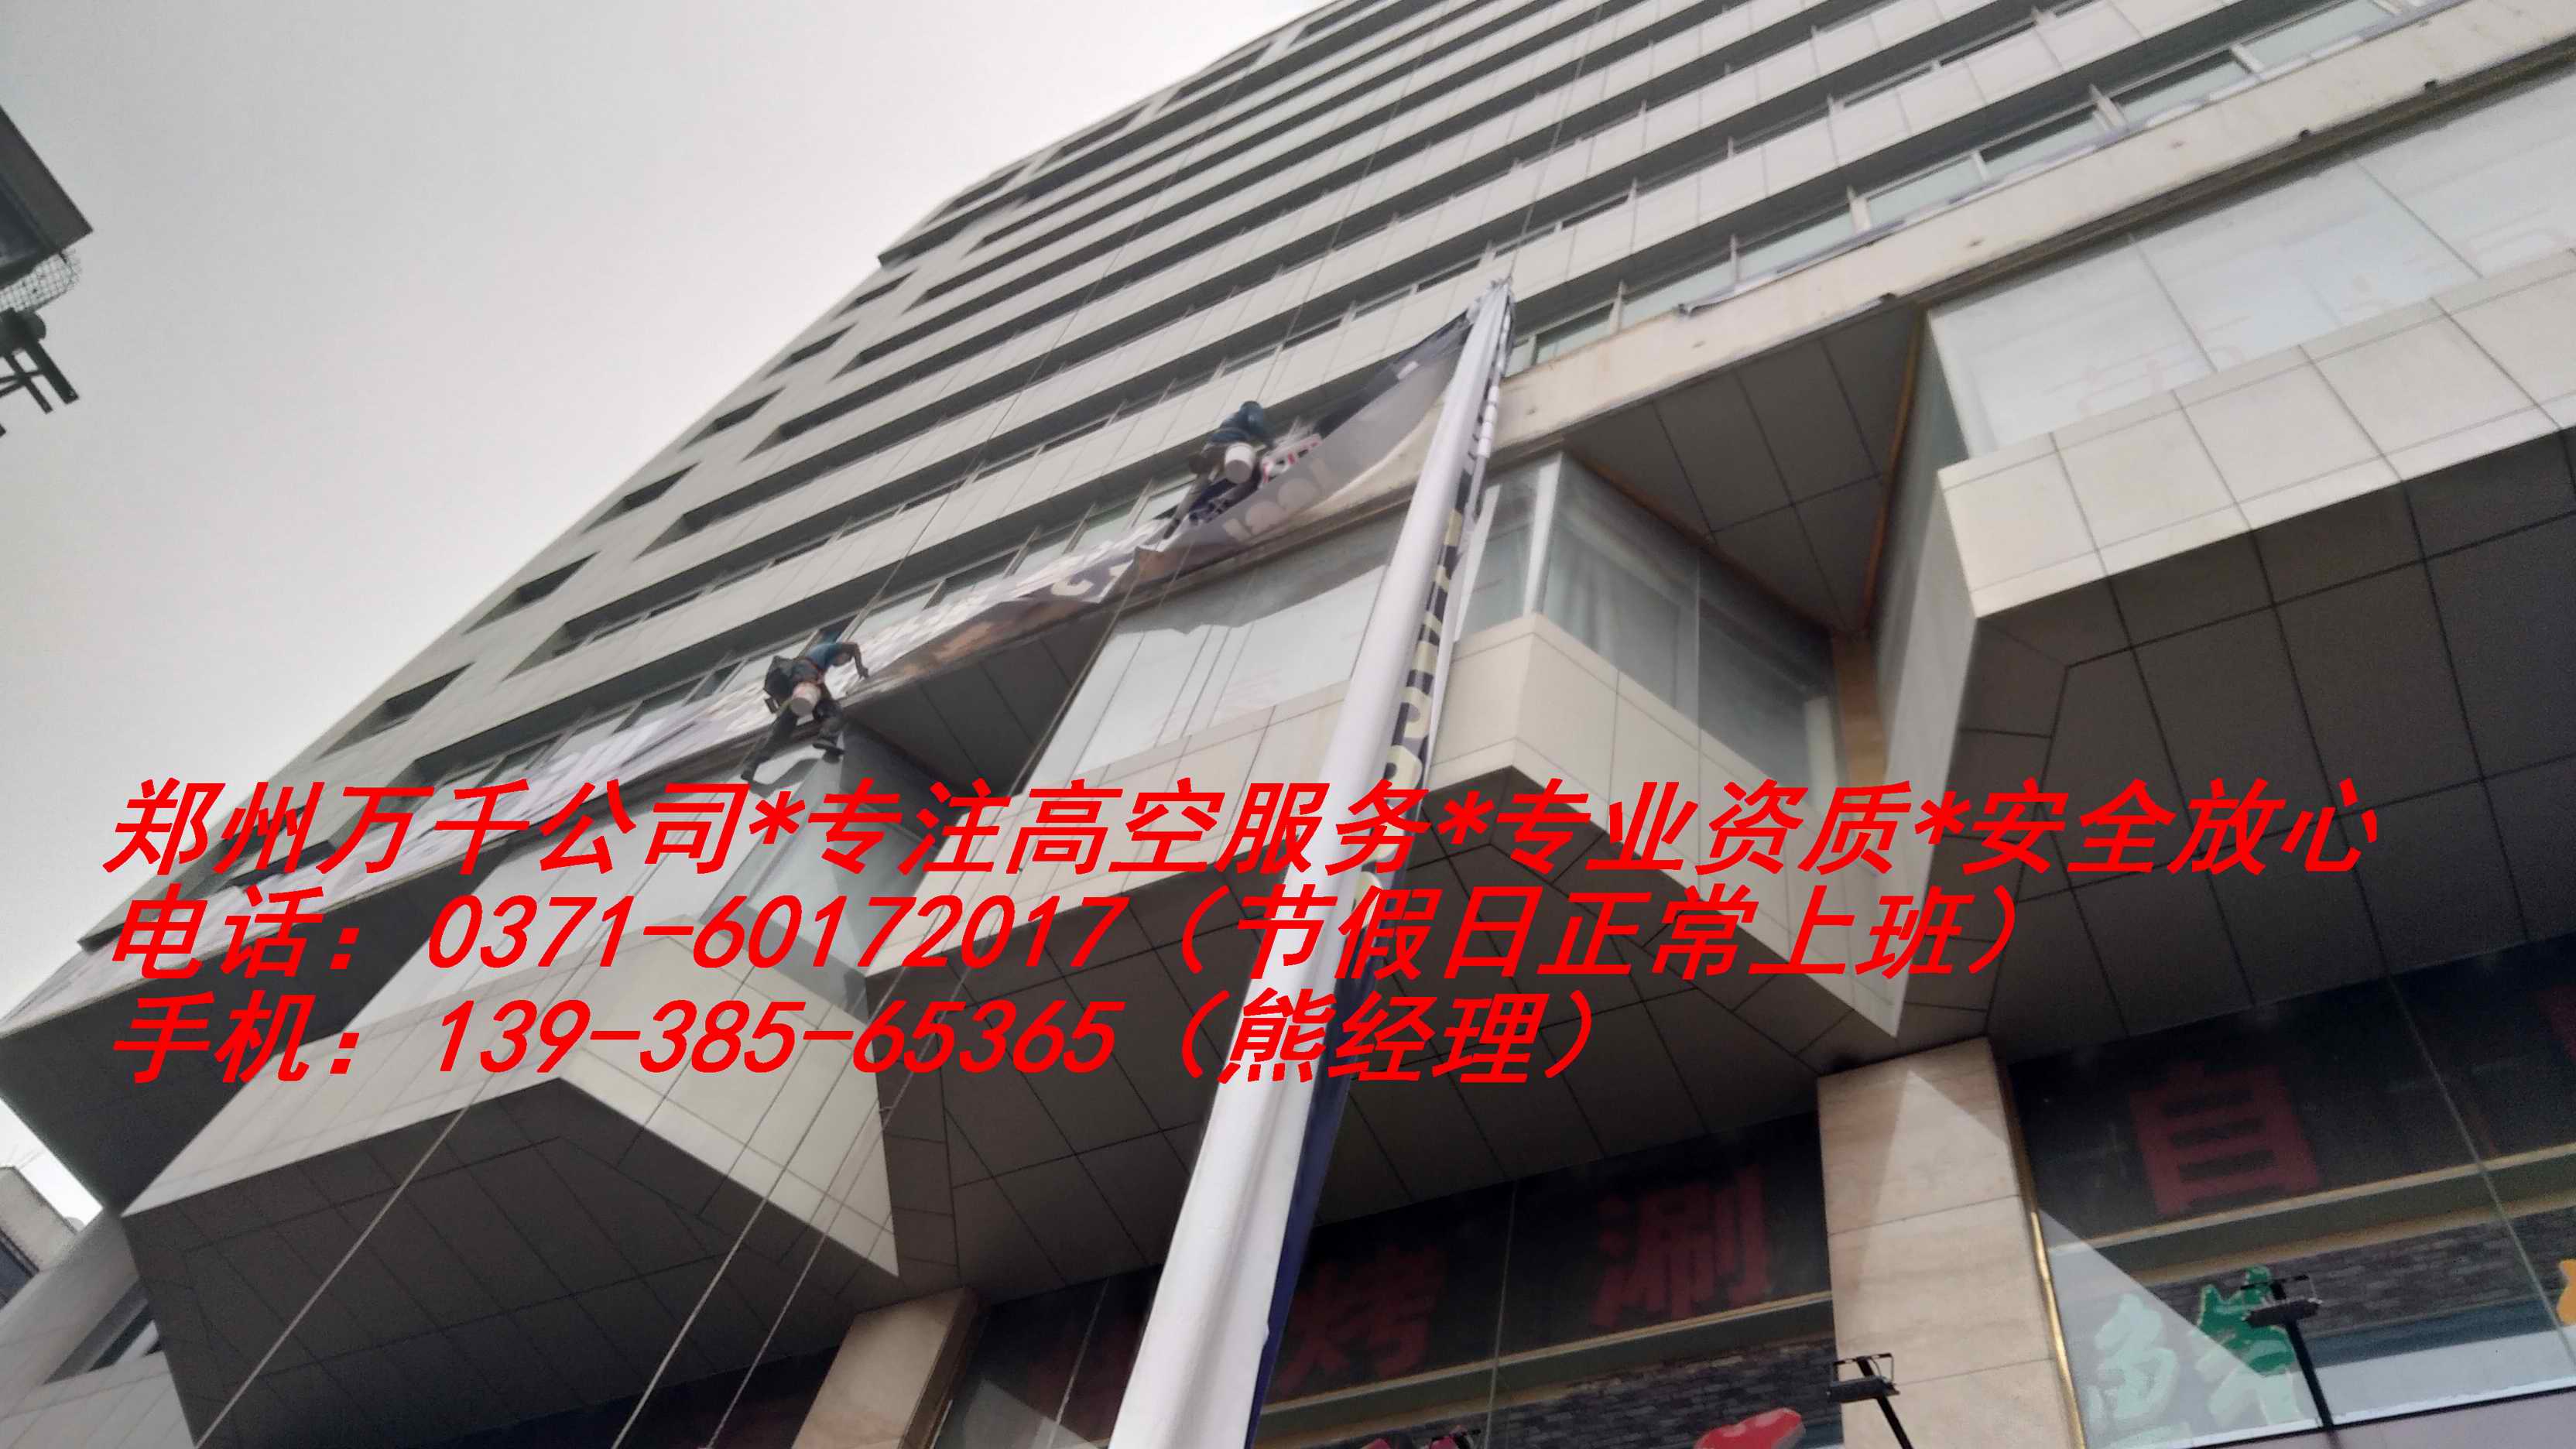 郑州中原区高空下水管道安装公司、服务咨询、报价电话号码13938565365图片